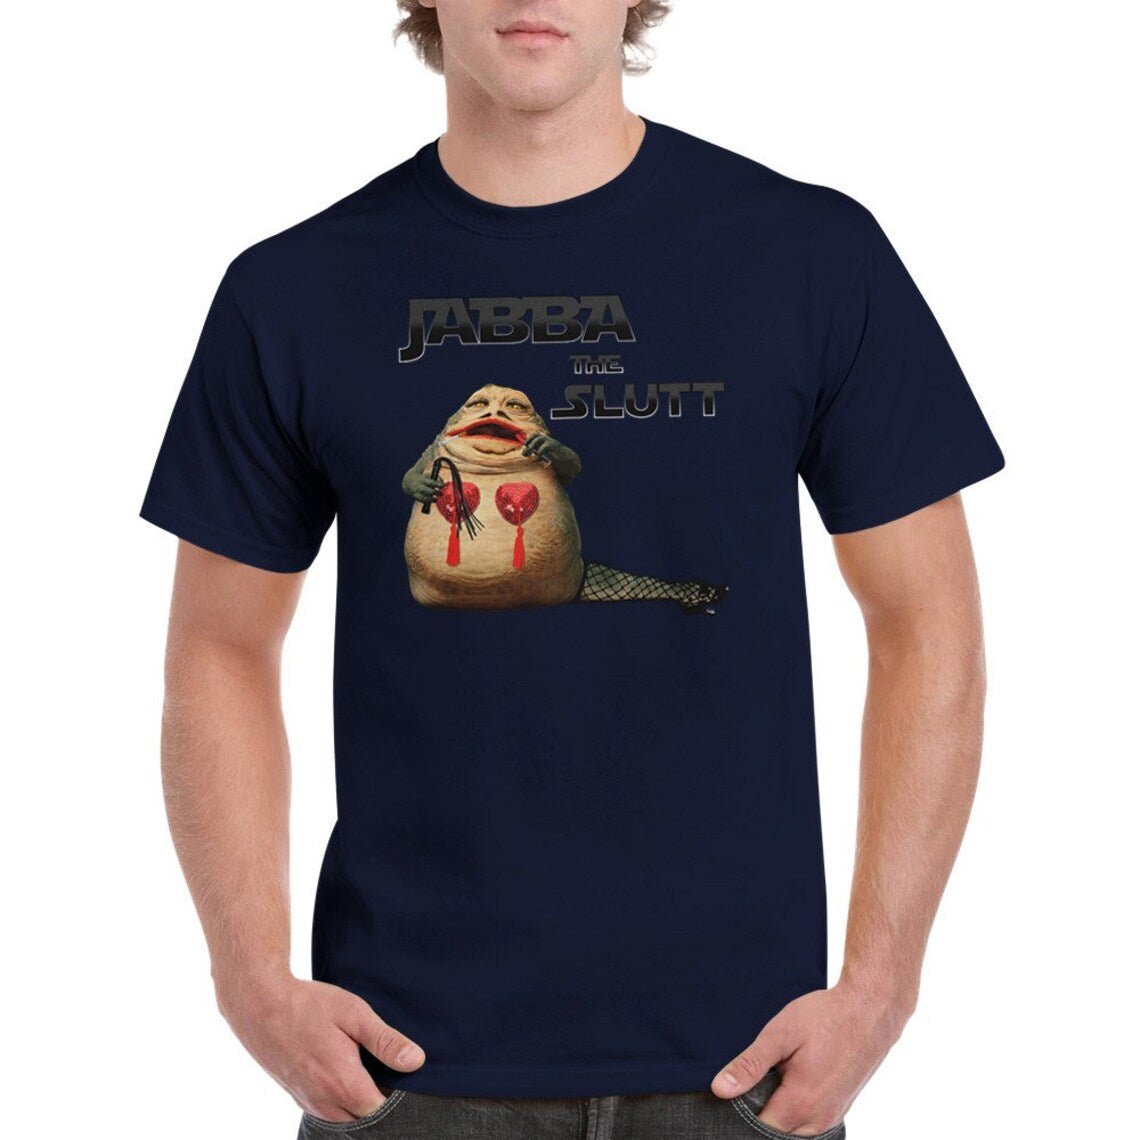 Jabba The Slutt Tee Shirt - Jabbatheslut